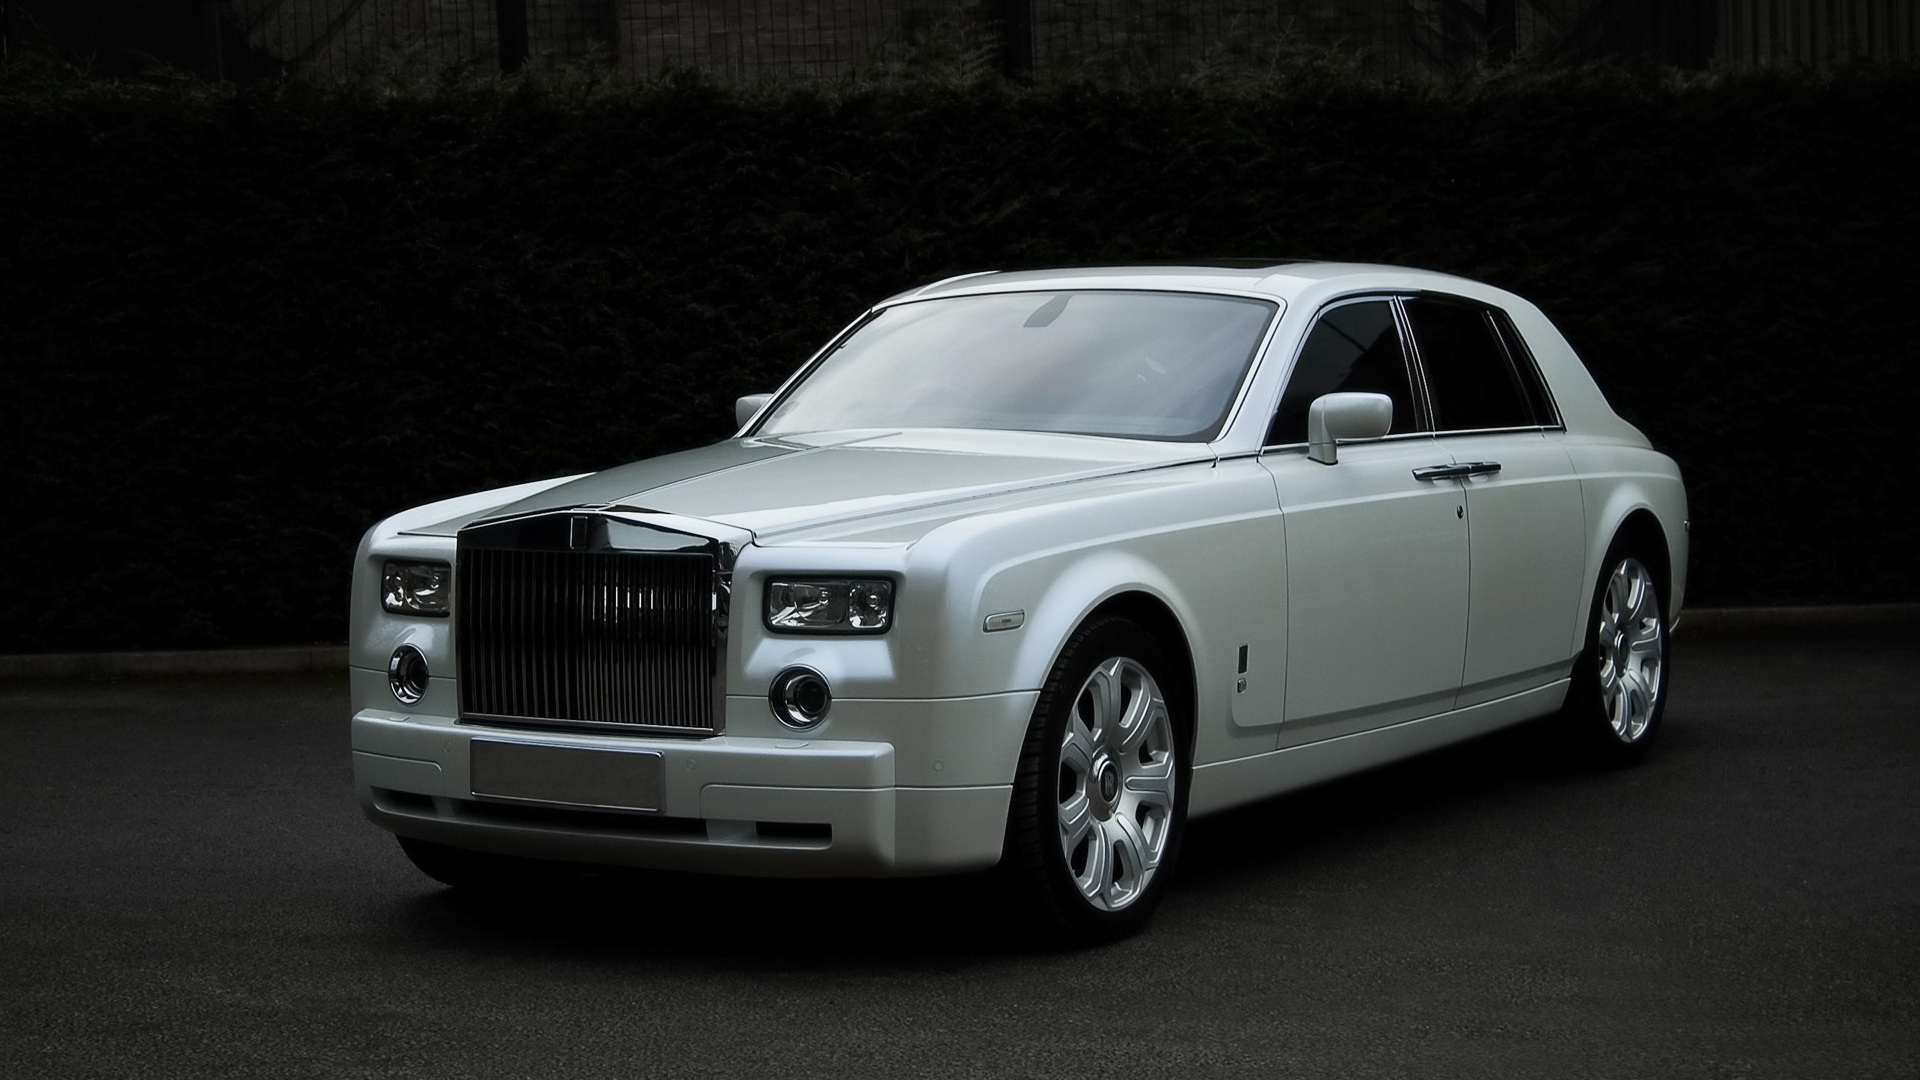 Rolls Royce White for 1920 x 1080 HDTV 1080p resolution